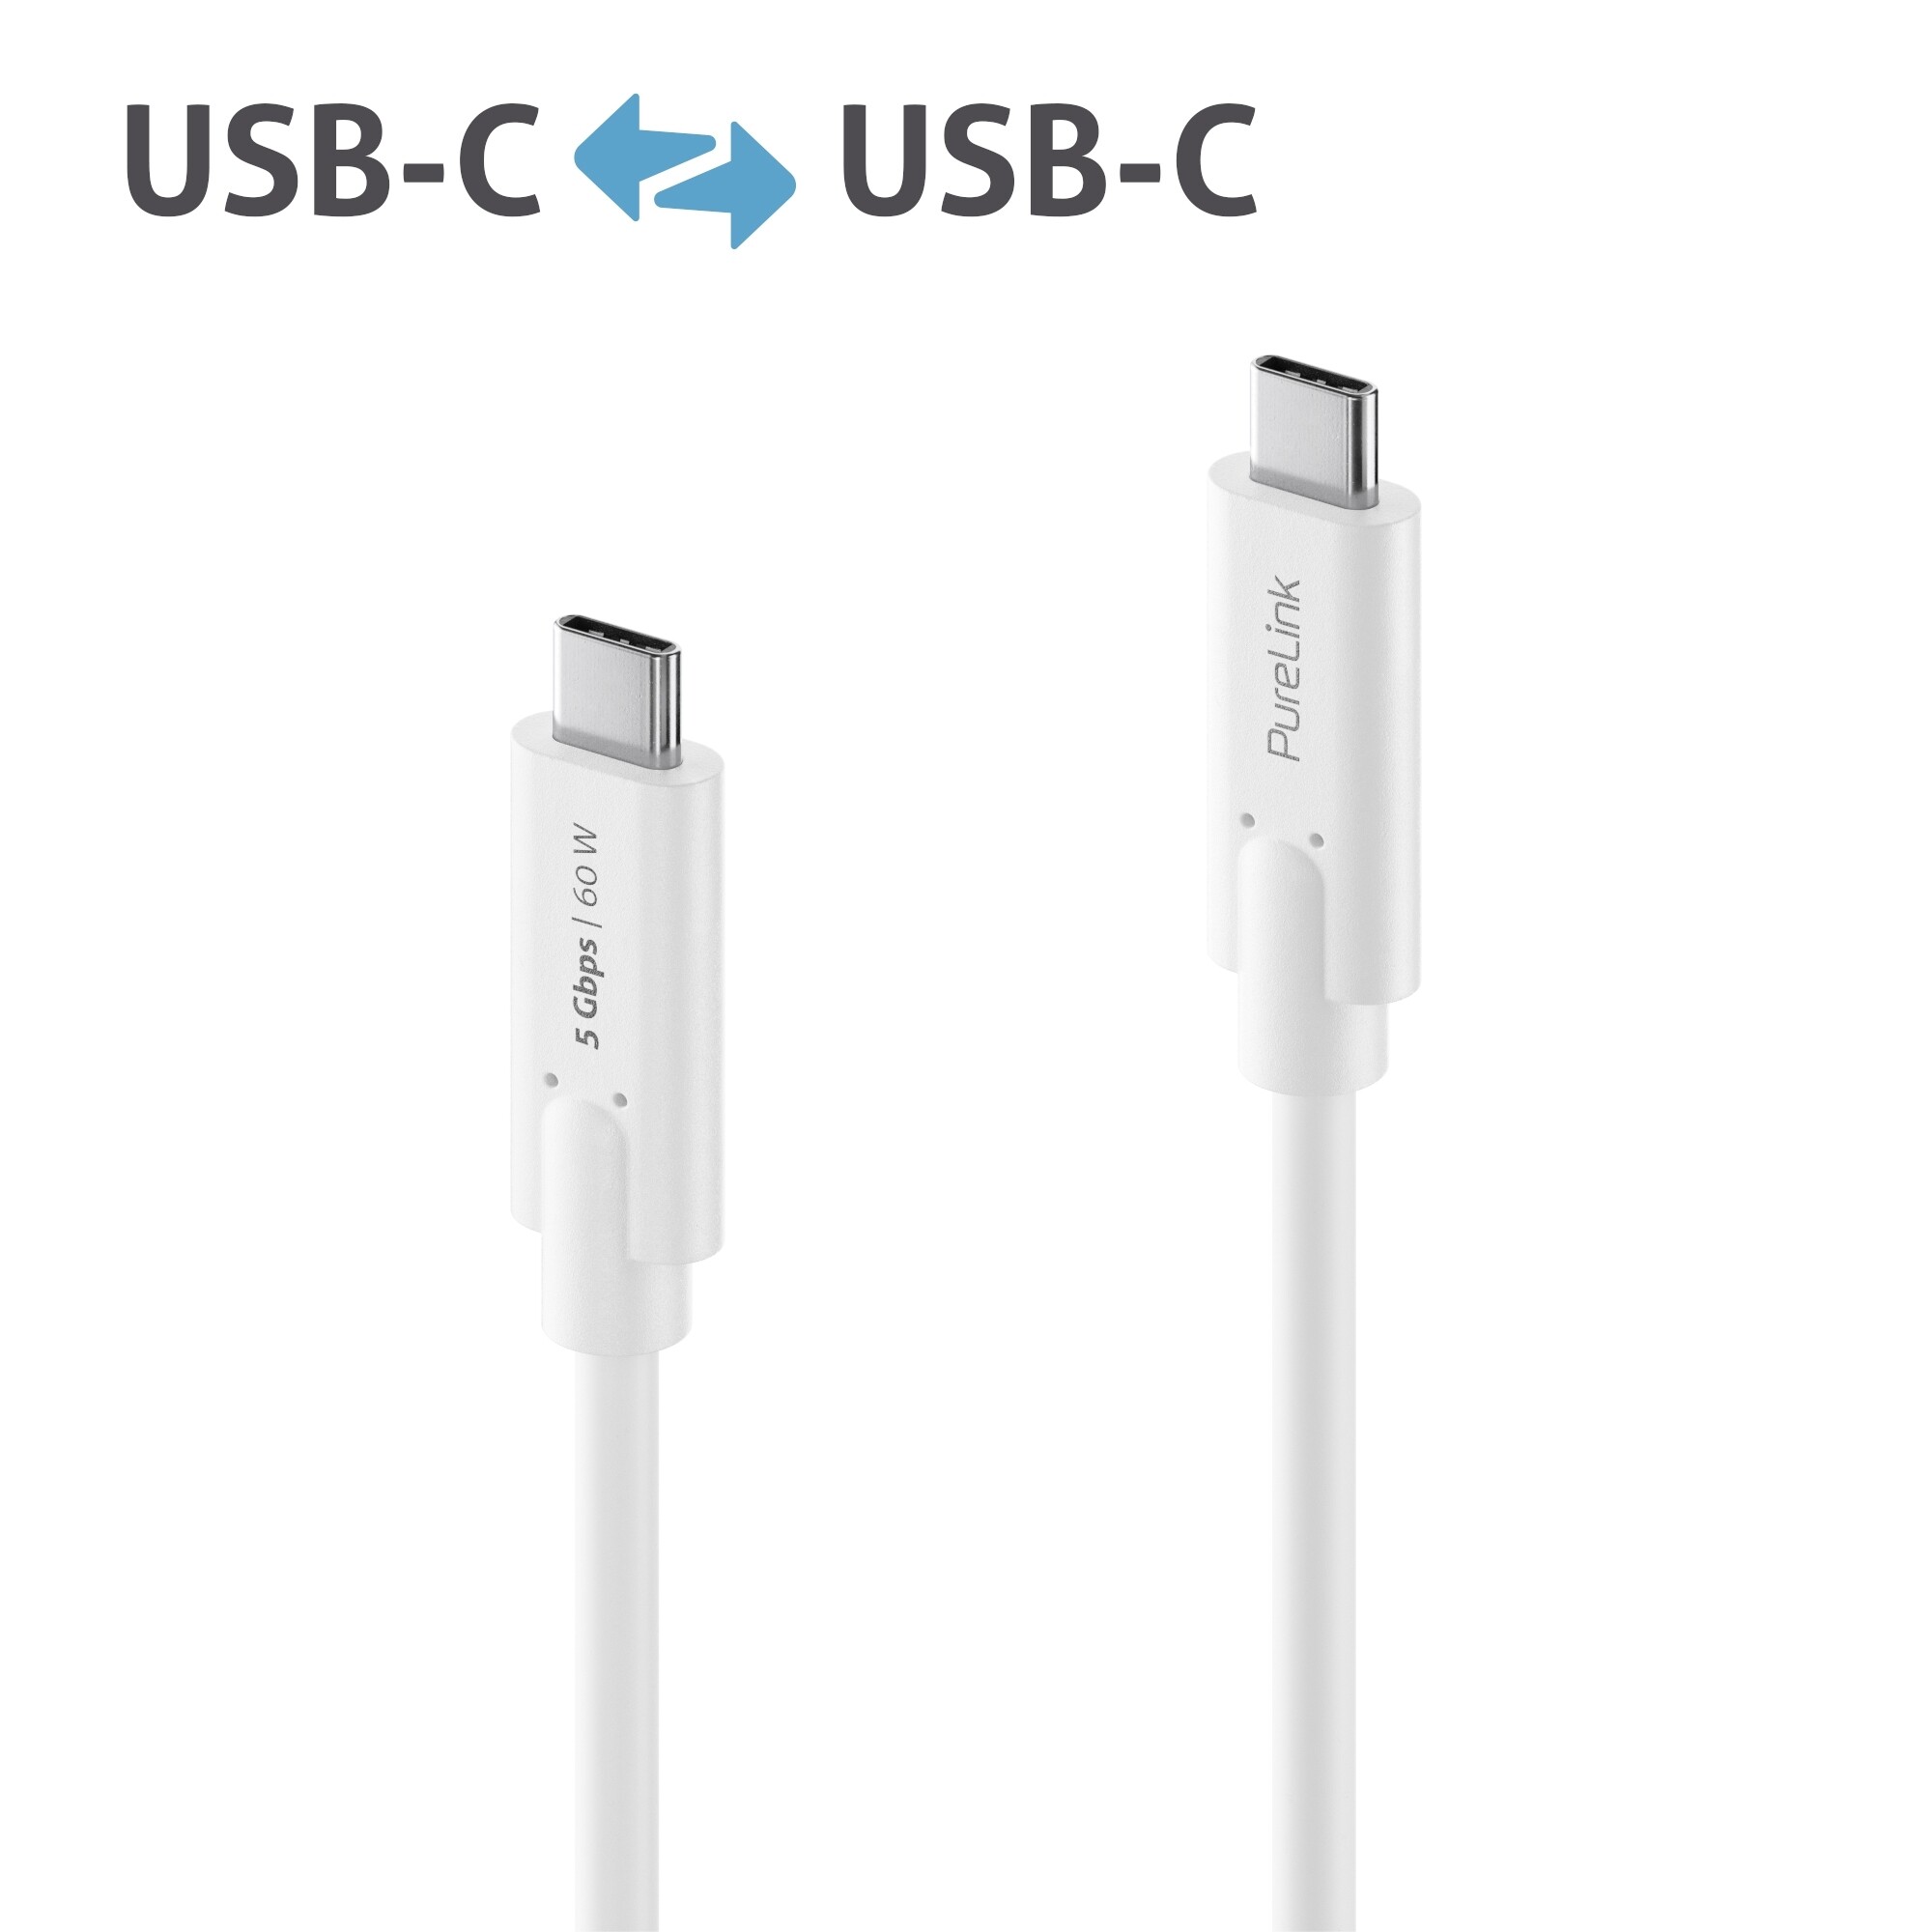 Purelink-IS2500-010-USB-C-auf-USB-C-Kabel-1m-weiss